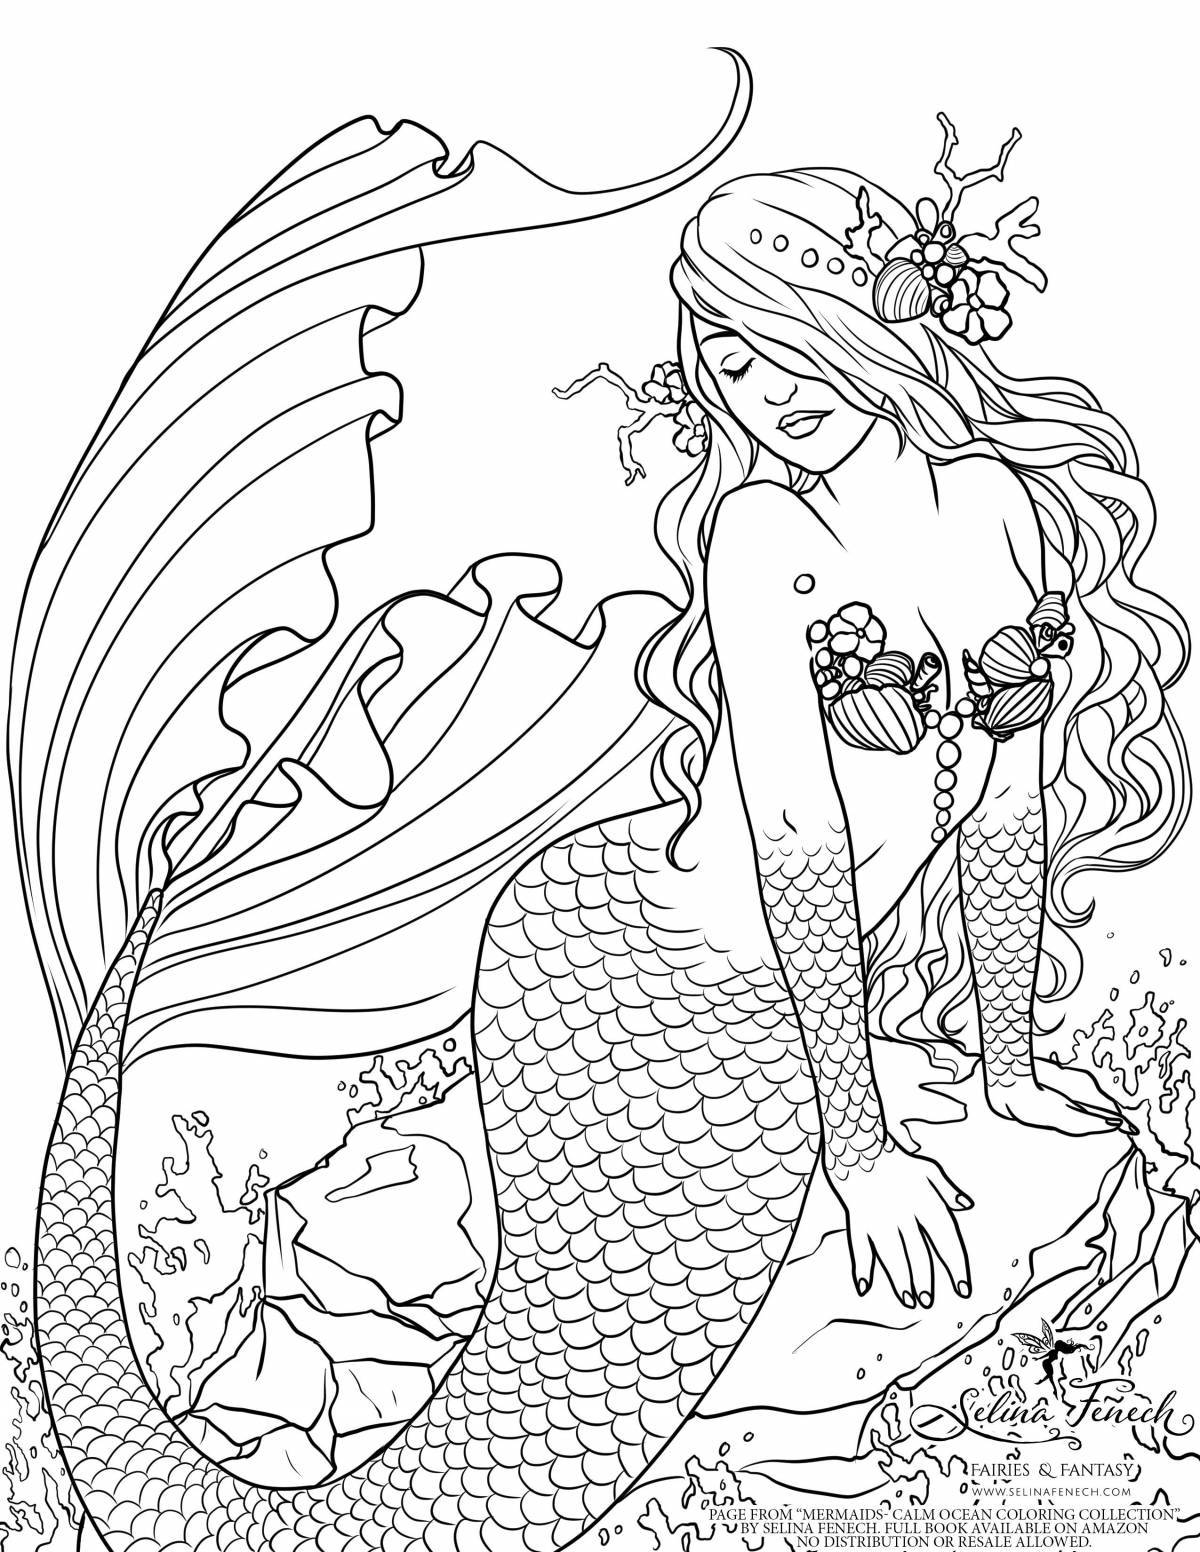 Joyful coloring mermaid